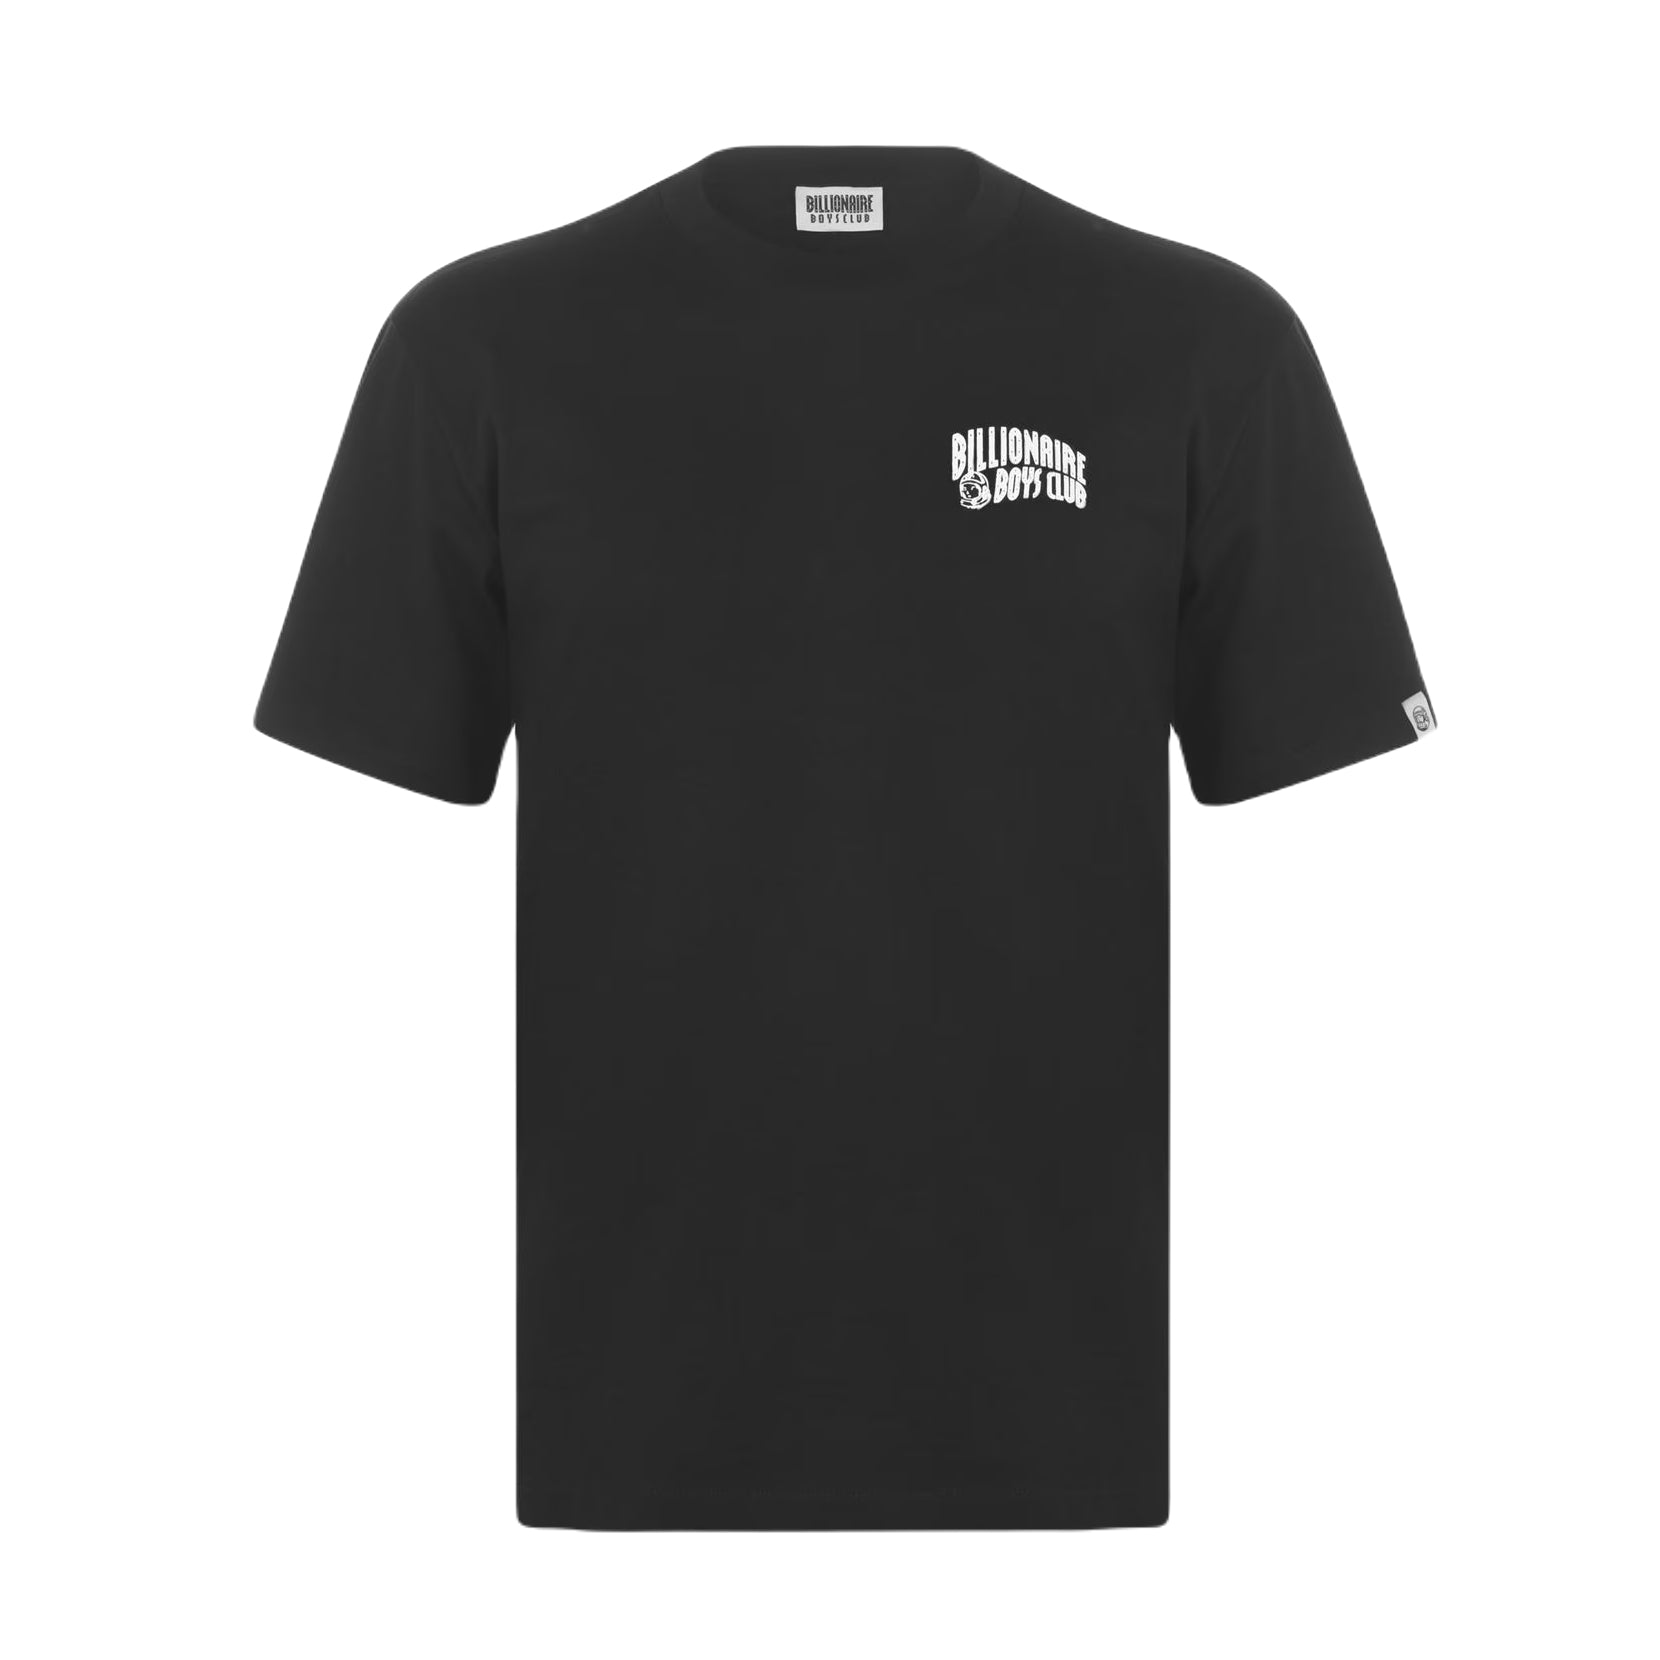 BBC Small Arch Logo T Shirt - Black - Escape Menswear